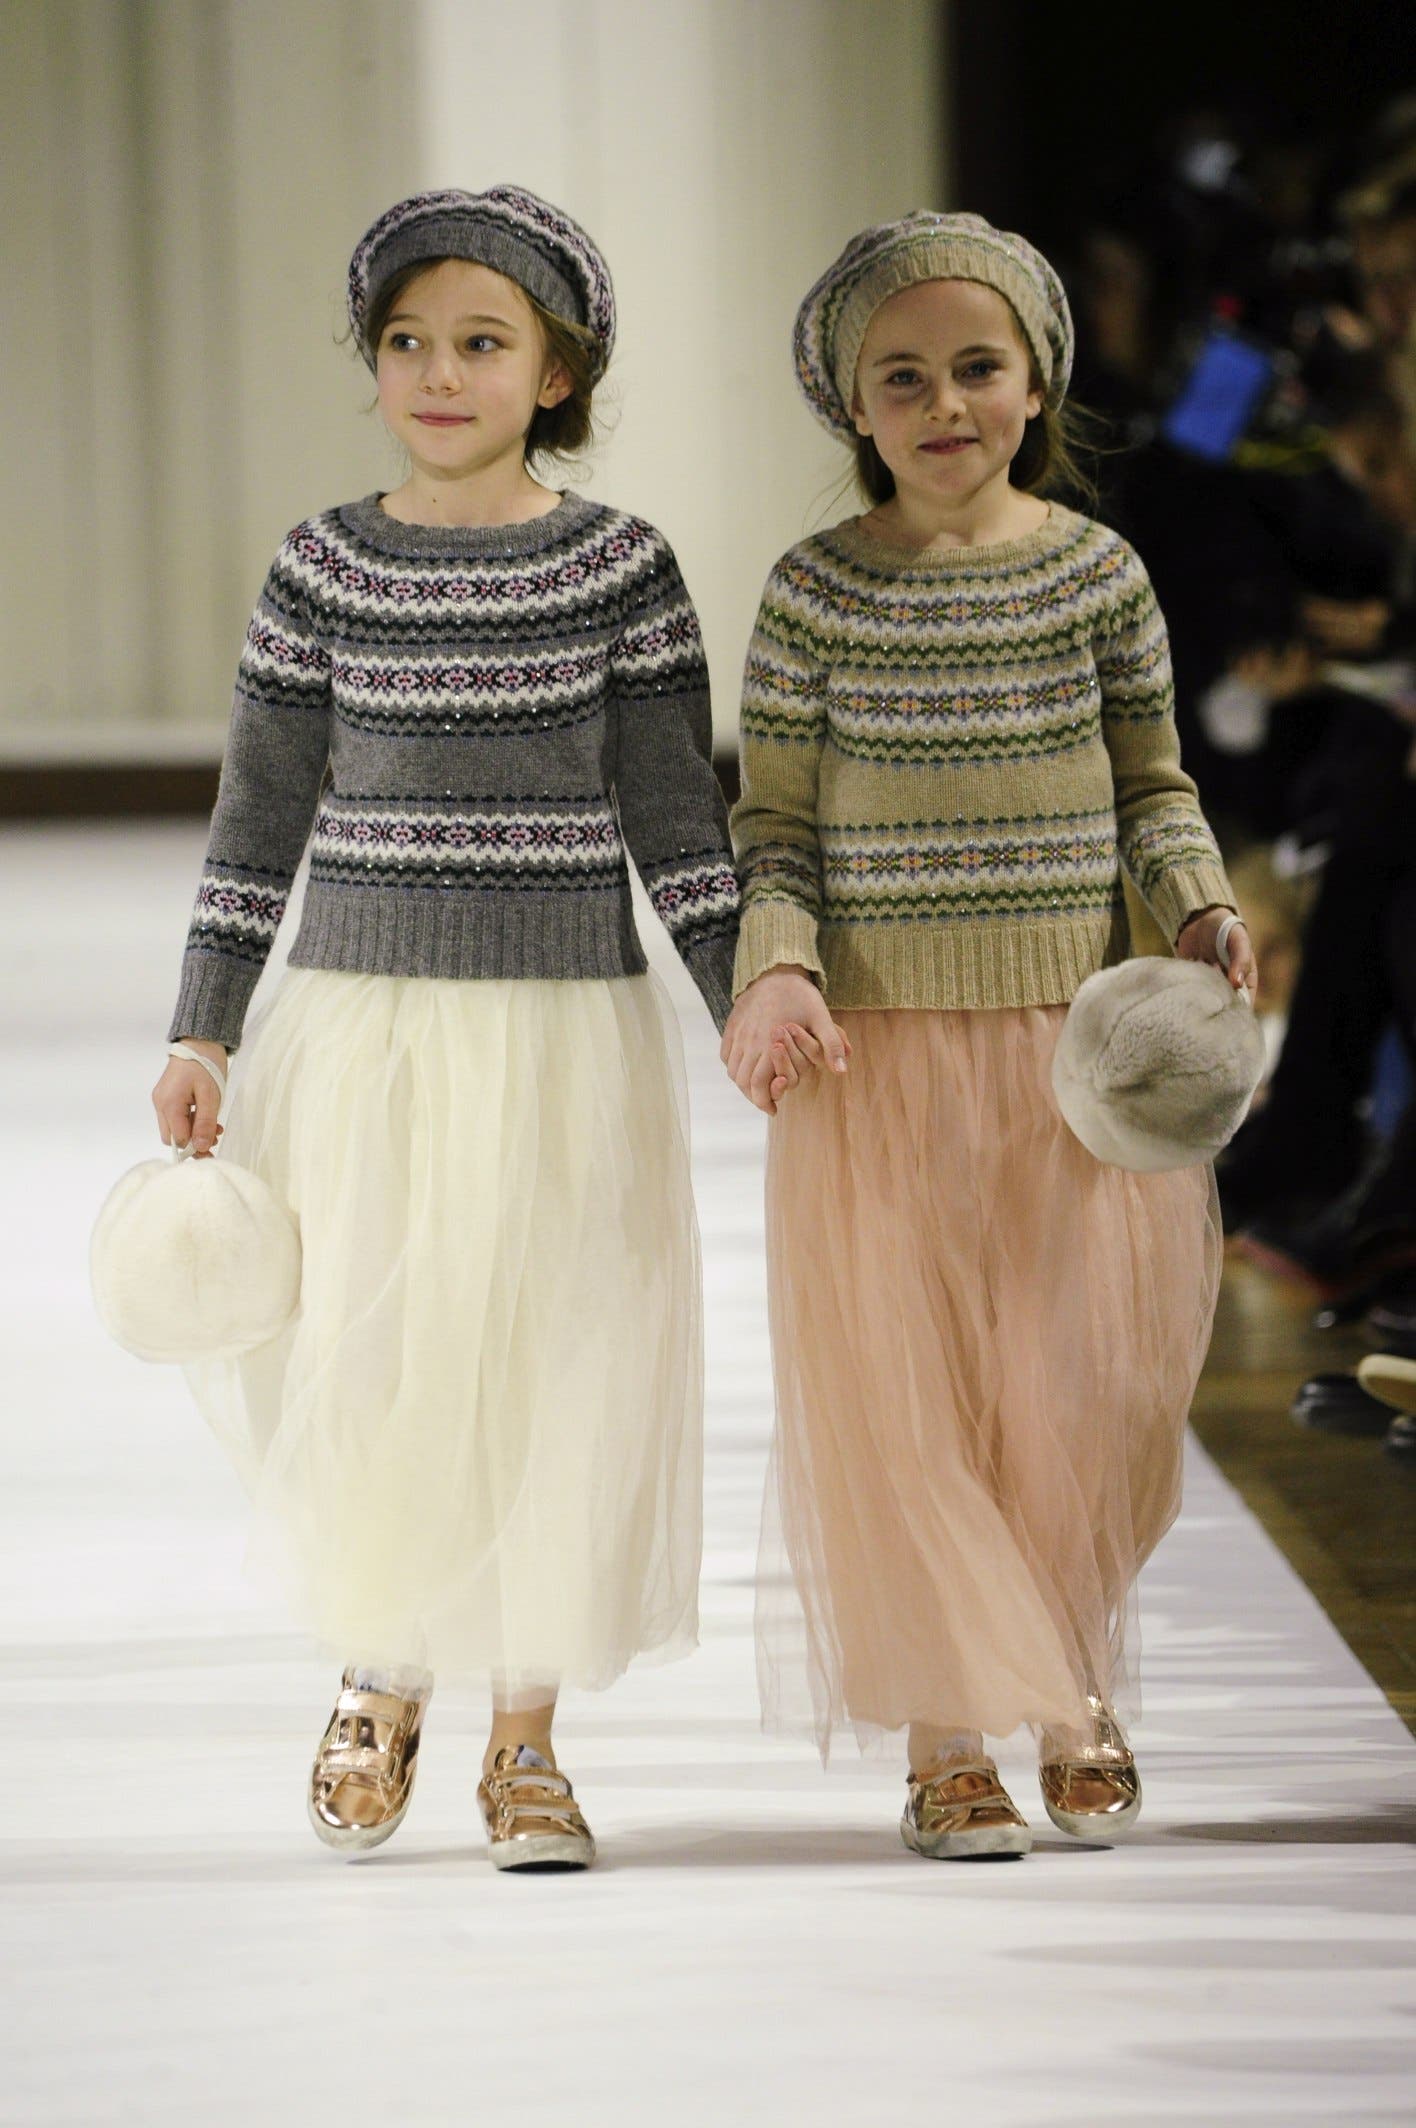 أزياء راقية للأطفال من "بونبوان" D999d5f6-f437-4324-9009-84737c1804c4